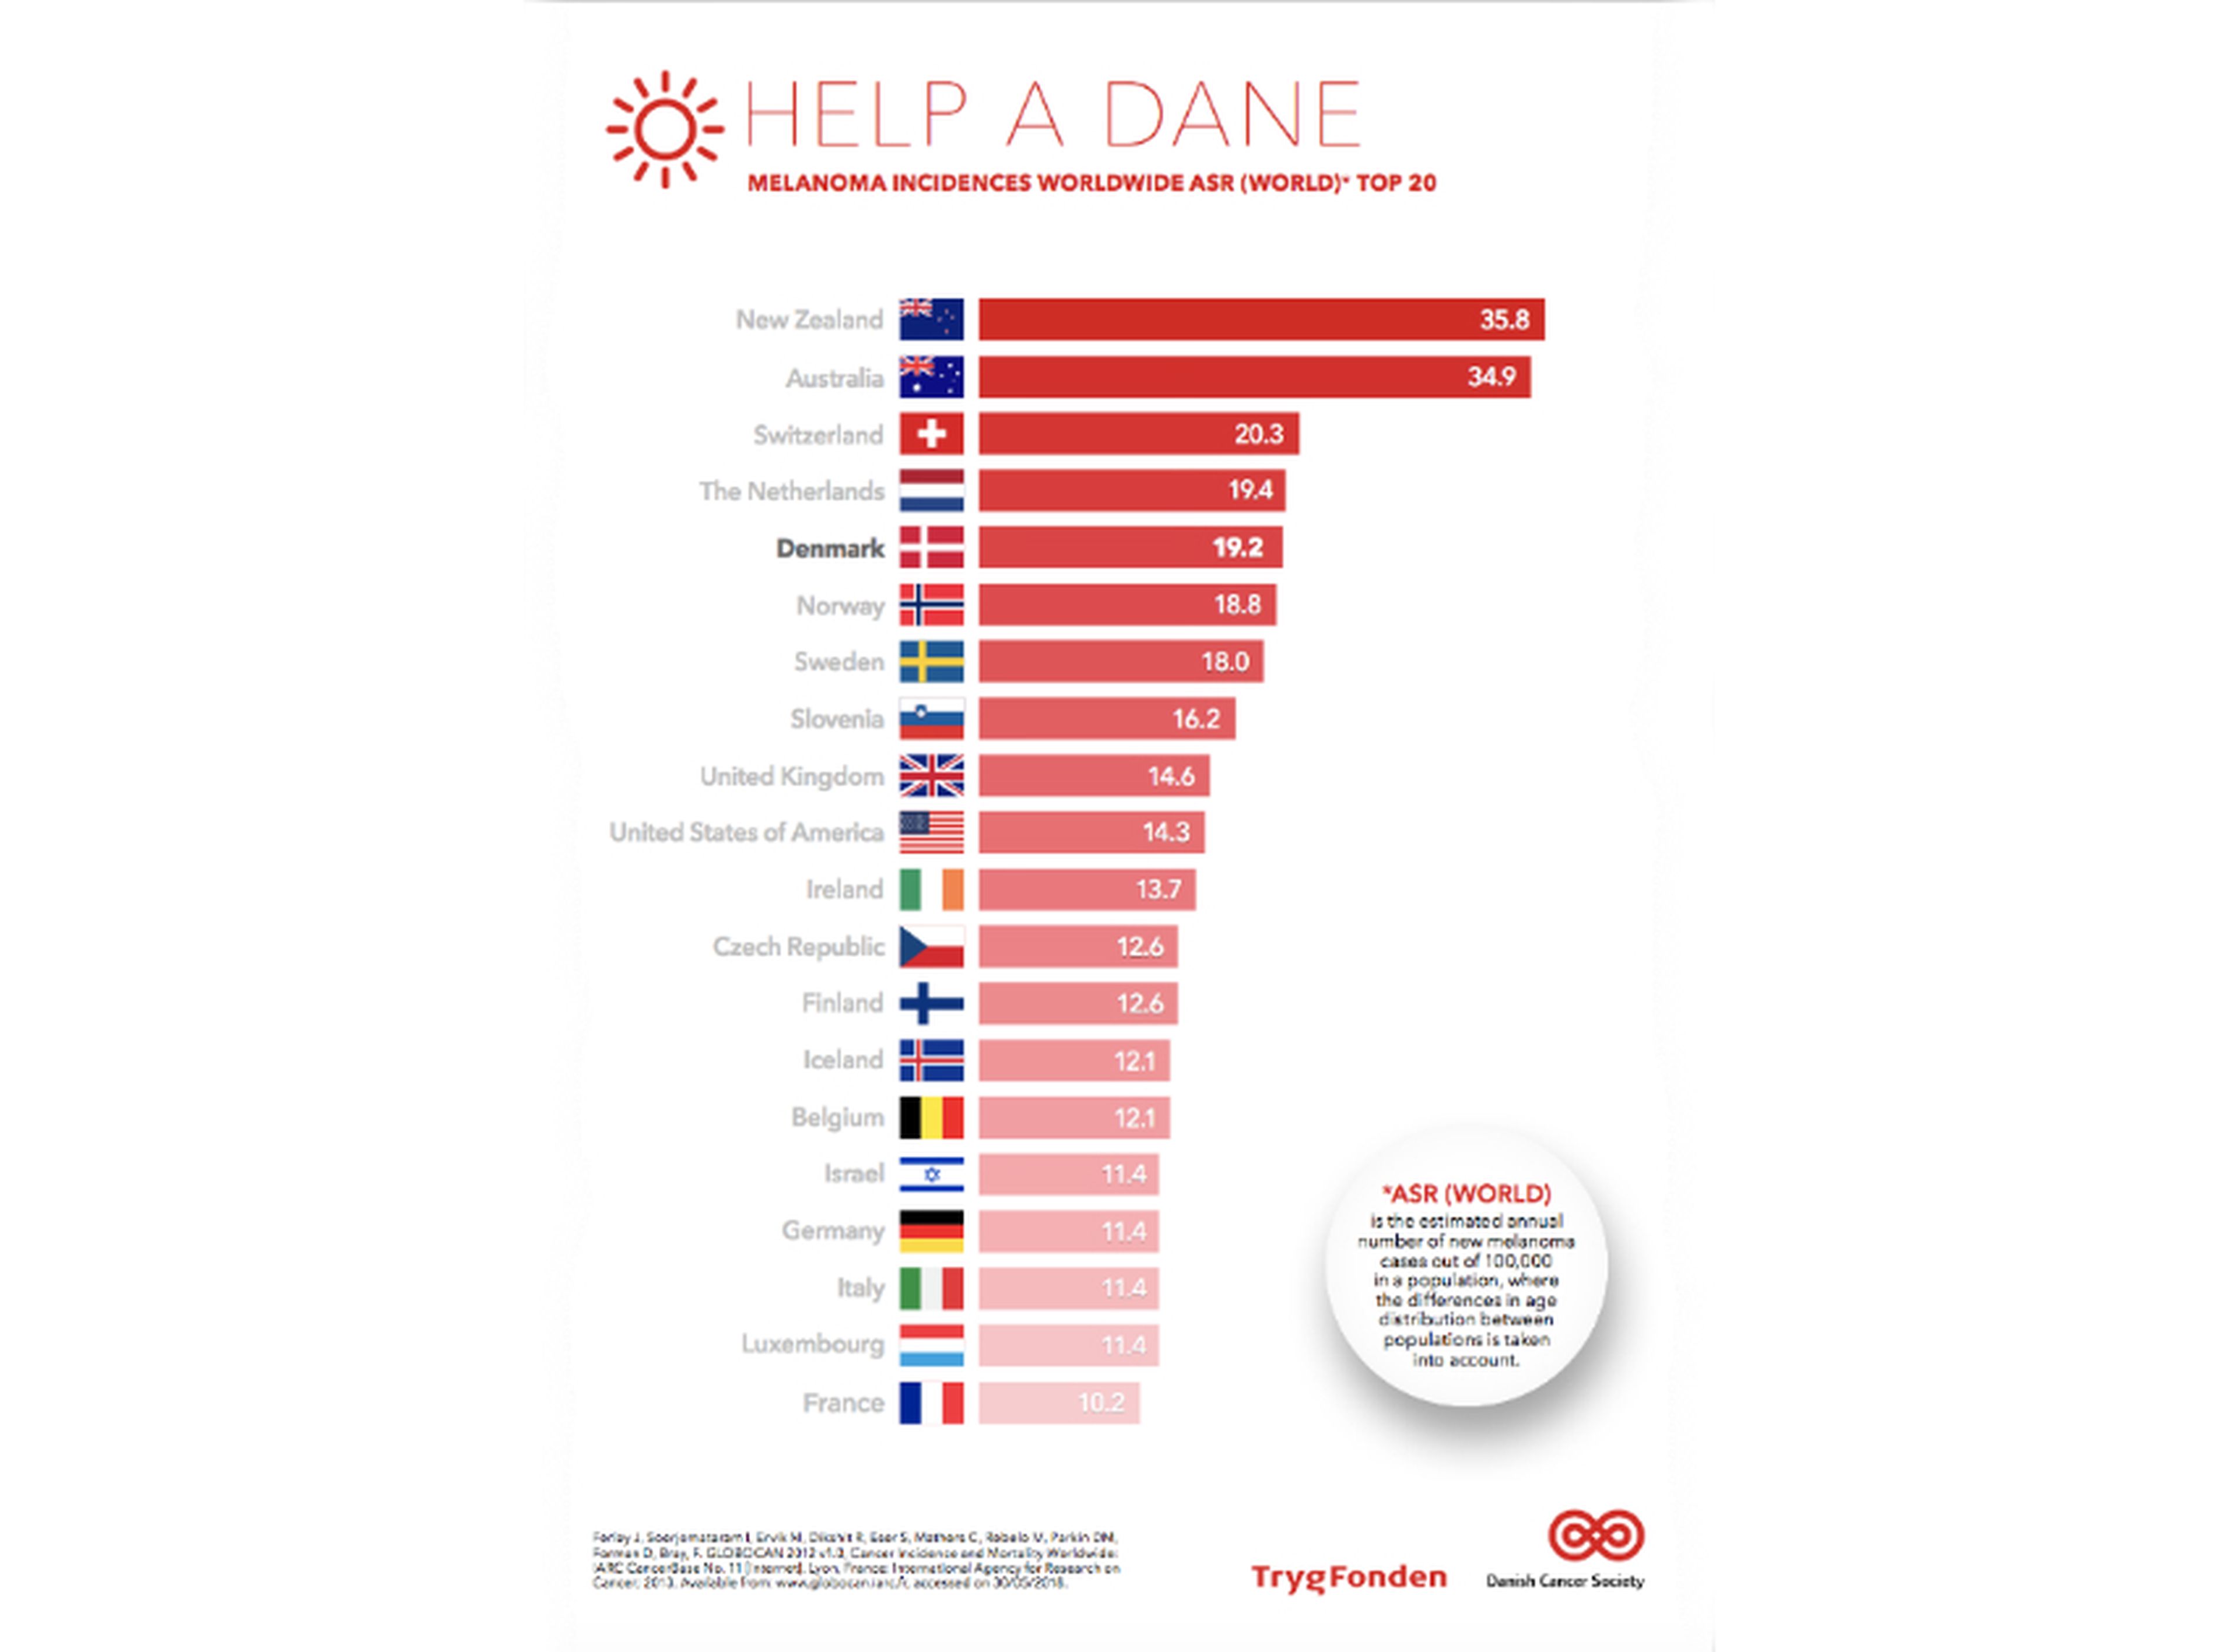 Los daneses se sitúan en el quinto puesto mundial con mayor incidencia de melanomas.